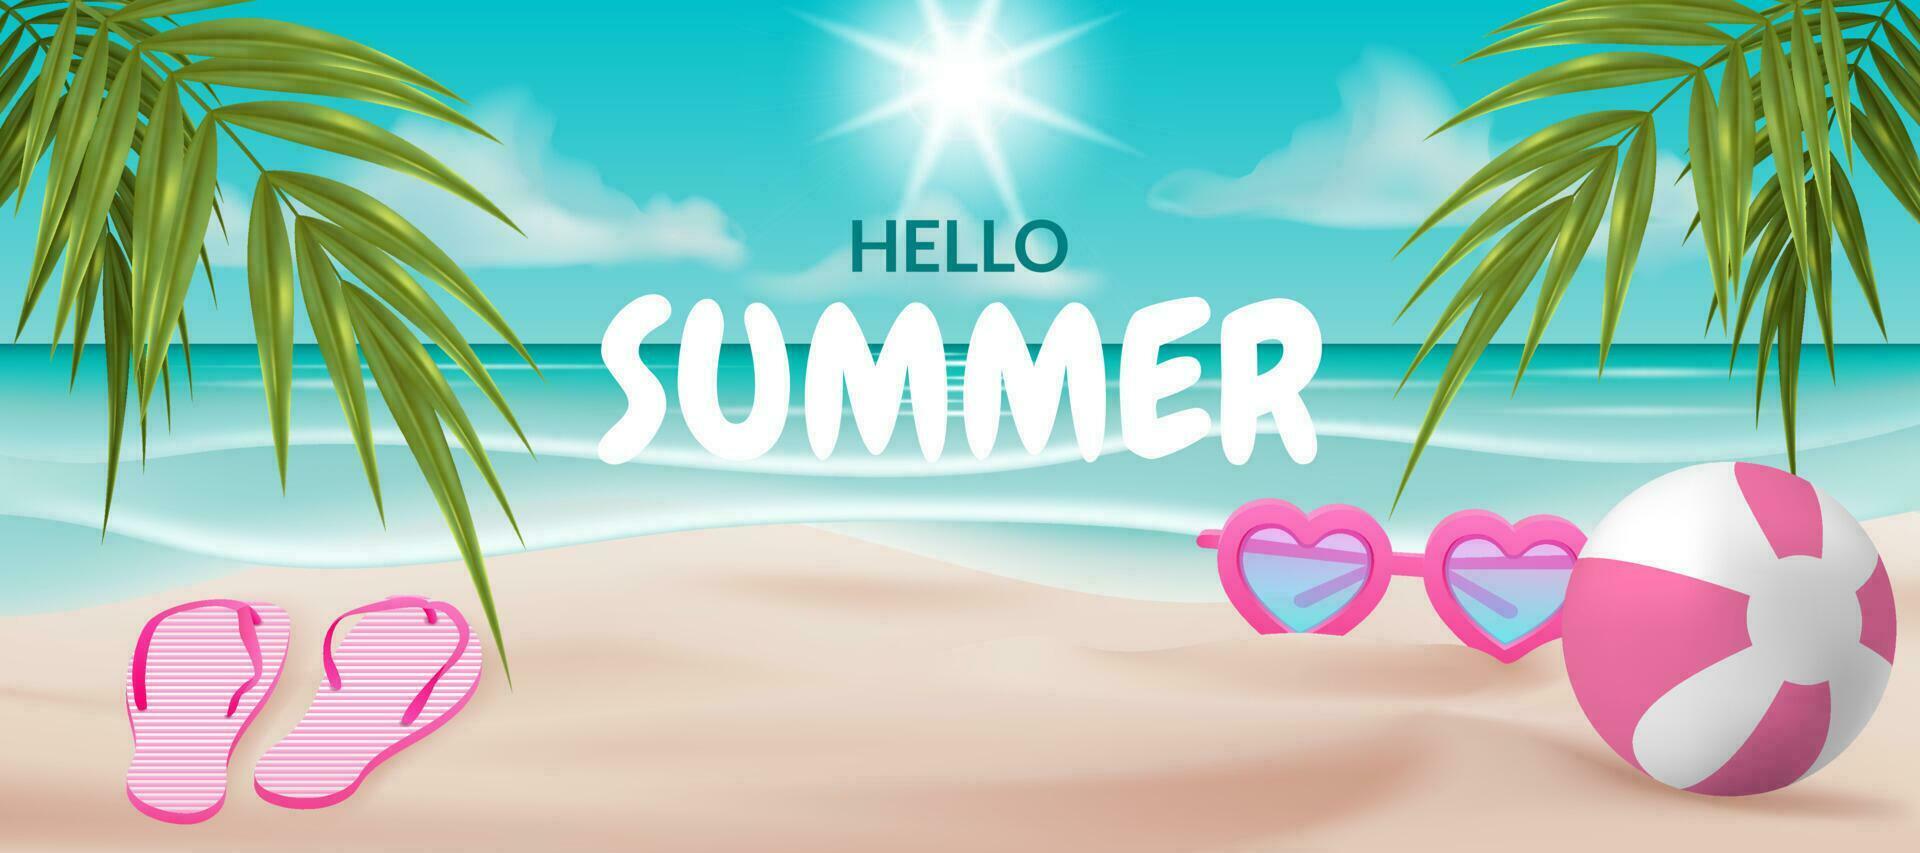 en vektor illustration av en strand scen med en leksak boll, hjärta formad solglasögon, och en par av flip floppar. perfekt för kort, affischer, banderoller, och Övrig mönster. idealisk för högtider, sommar semester